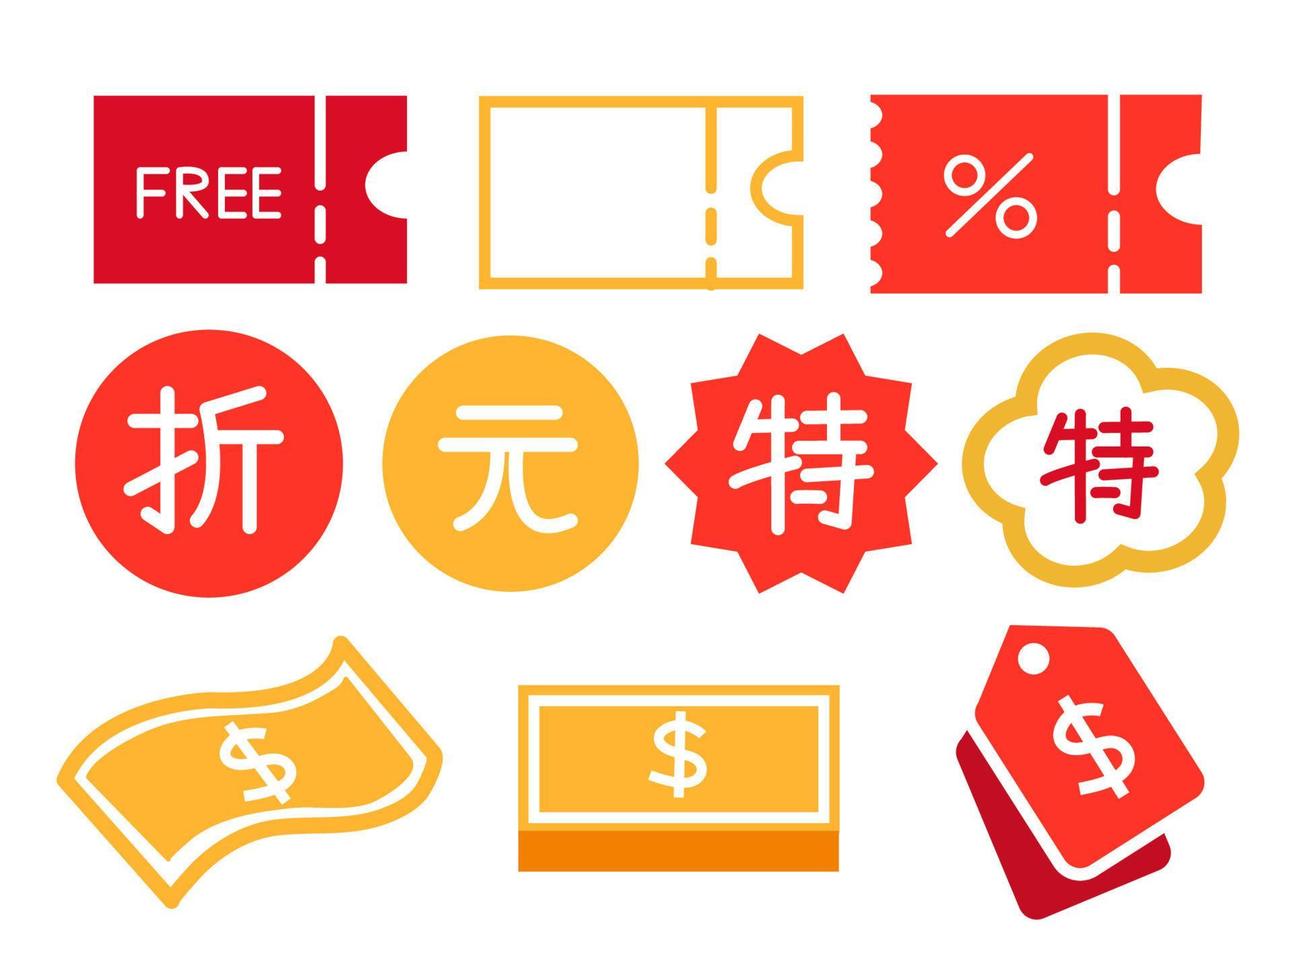 chinesisches neujahrsrabattplakat oder bannerverkauf. aktions- und einkaufsvorlage, verkaufsetikett, textsymbol sonderangebot rabattelement vektor